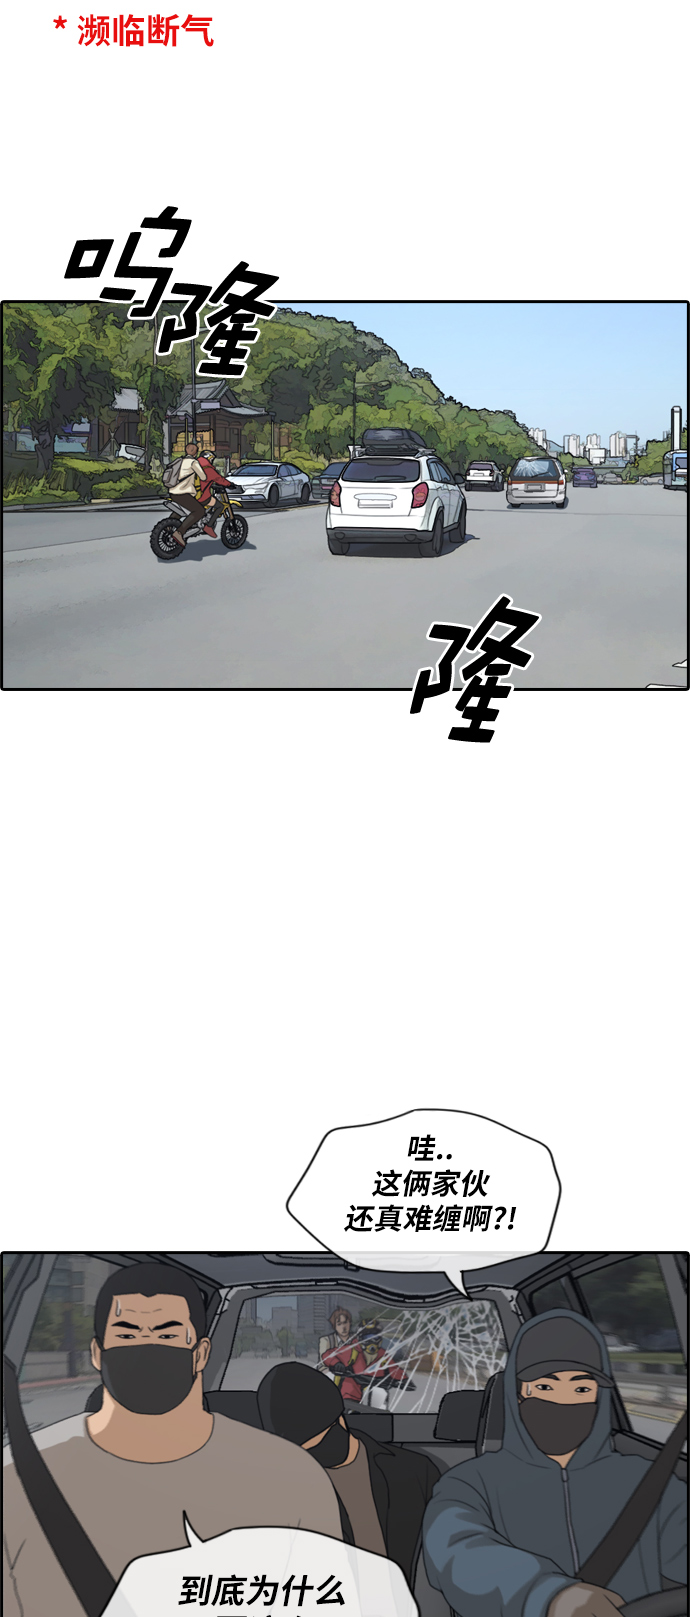 [第182话] 摩托车追击战 (2)16